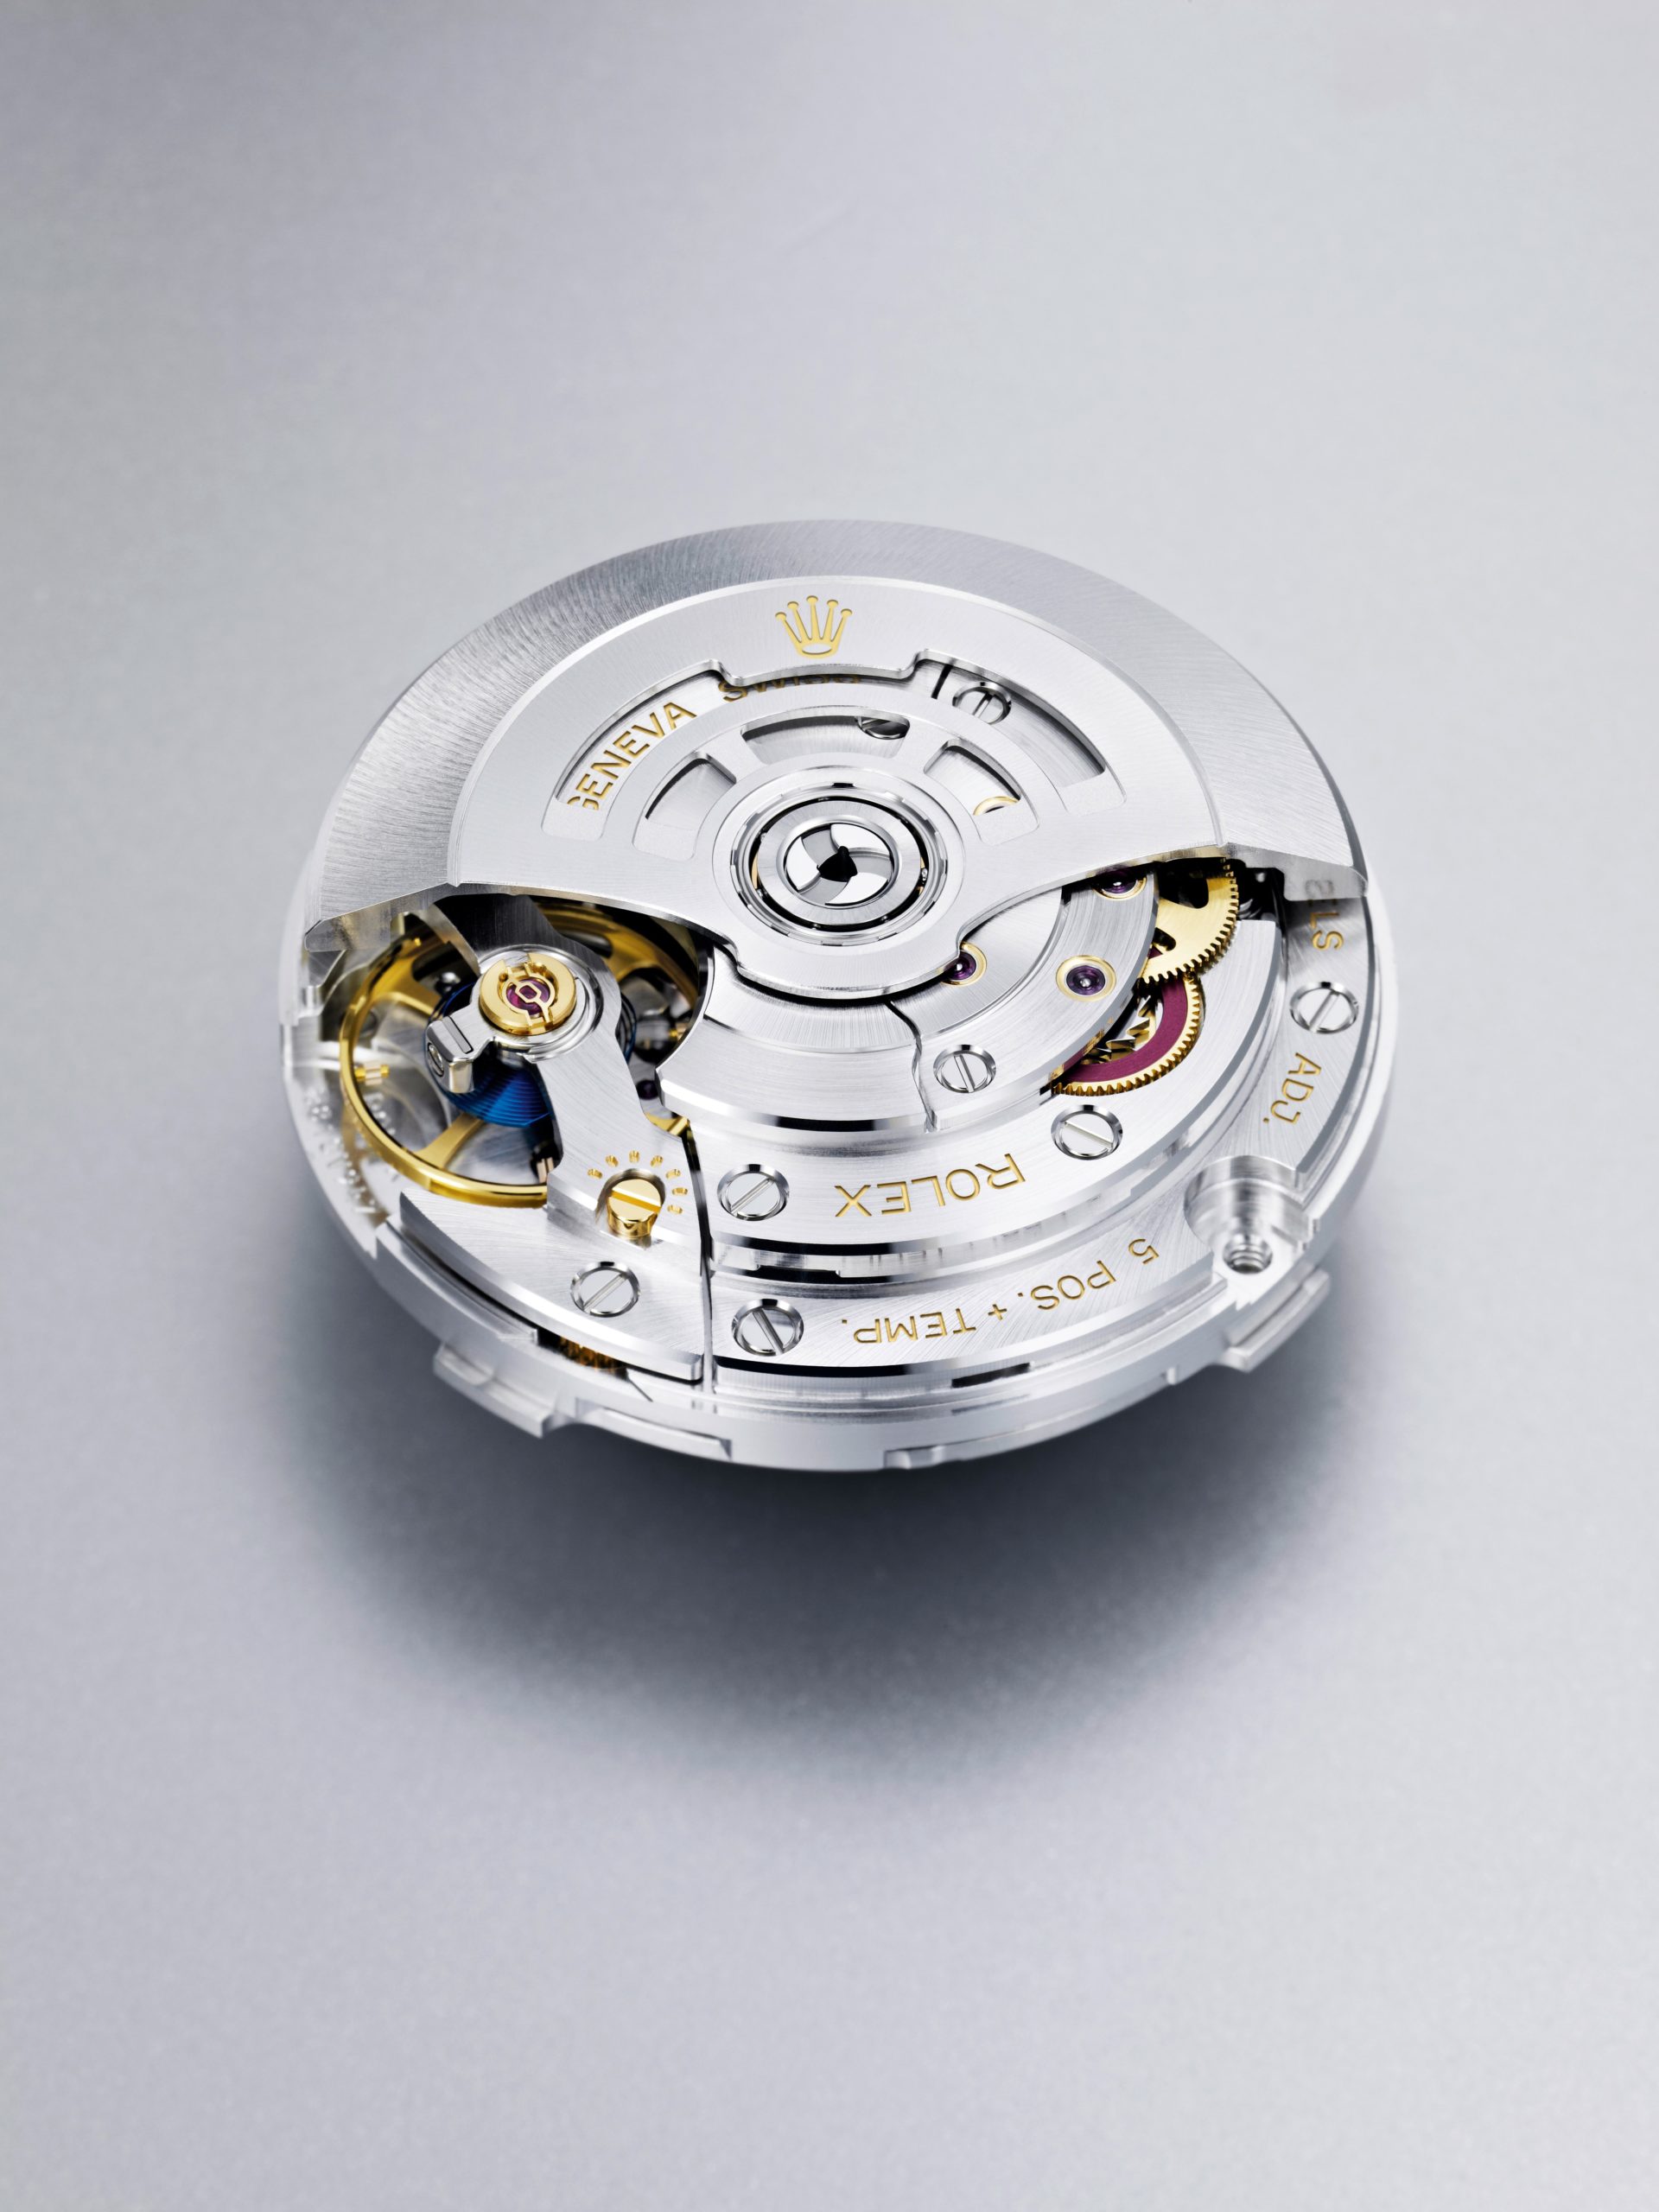 Das Rolex-Manufakturwerk mit Chronergy-Hemmung ist ausnehmend präzise wie robust